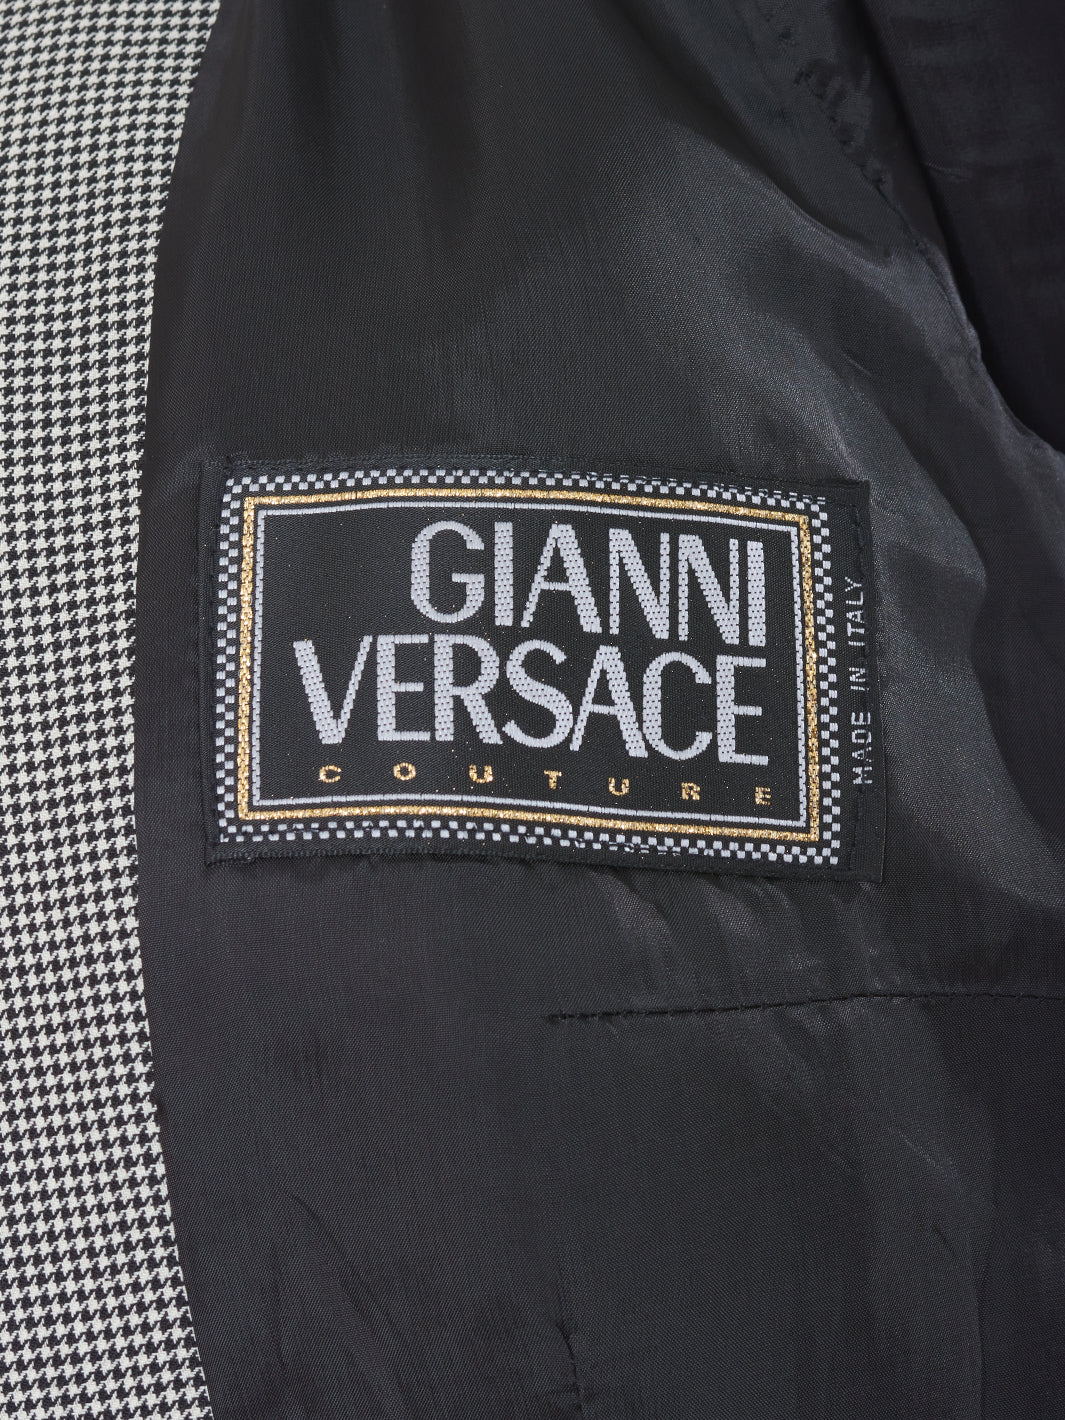 Gianni Versace Houndstooth Blazer